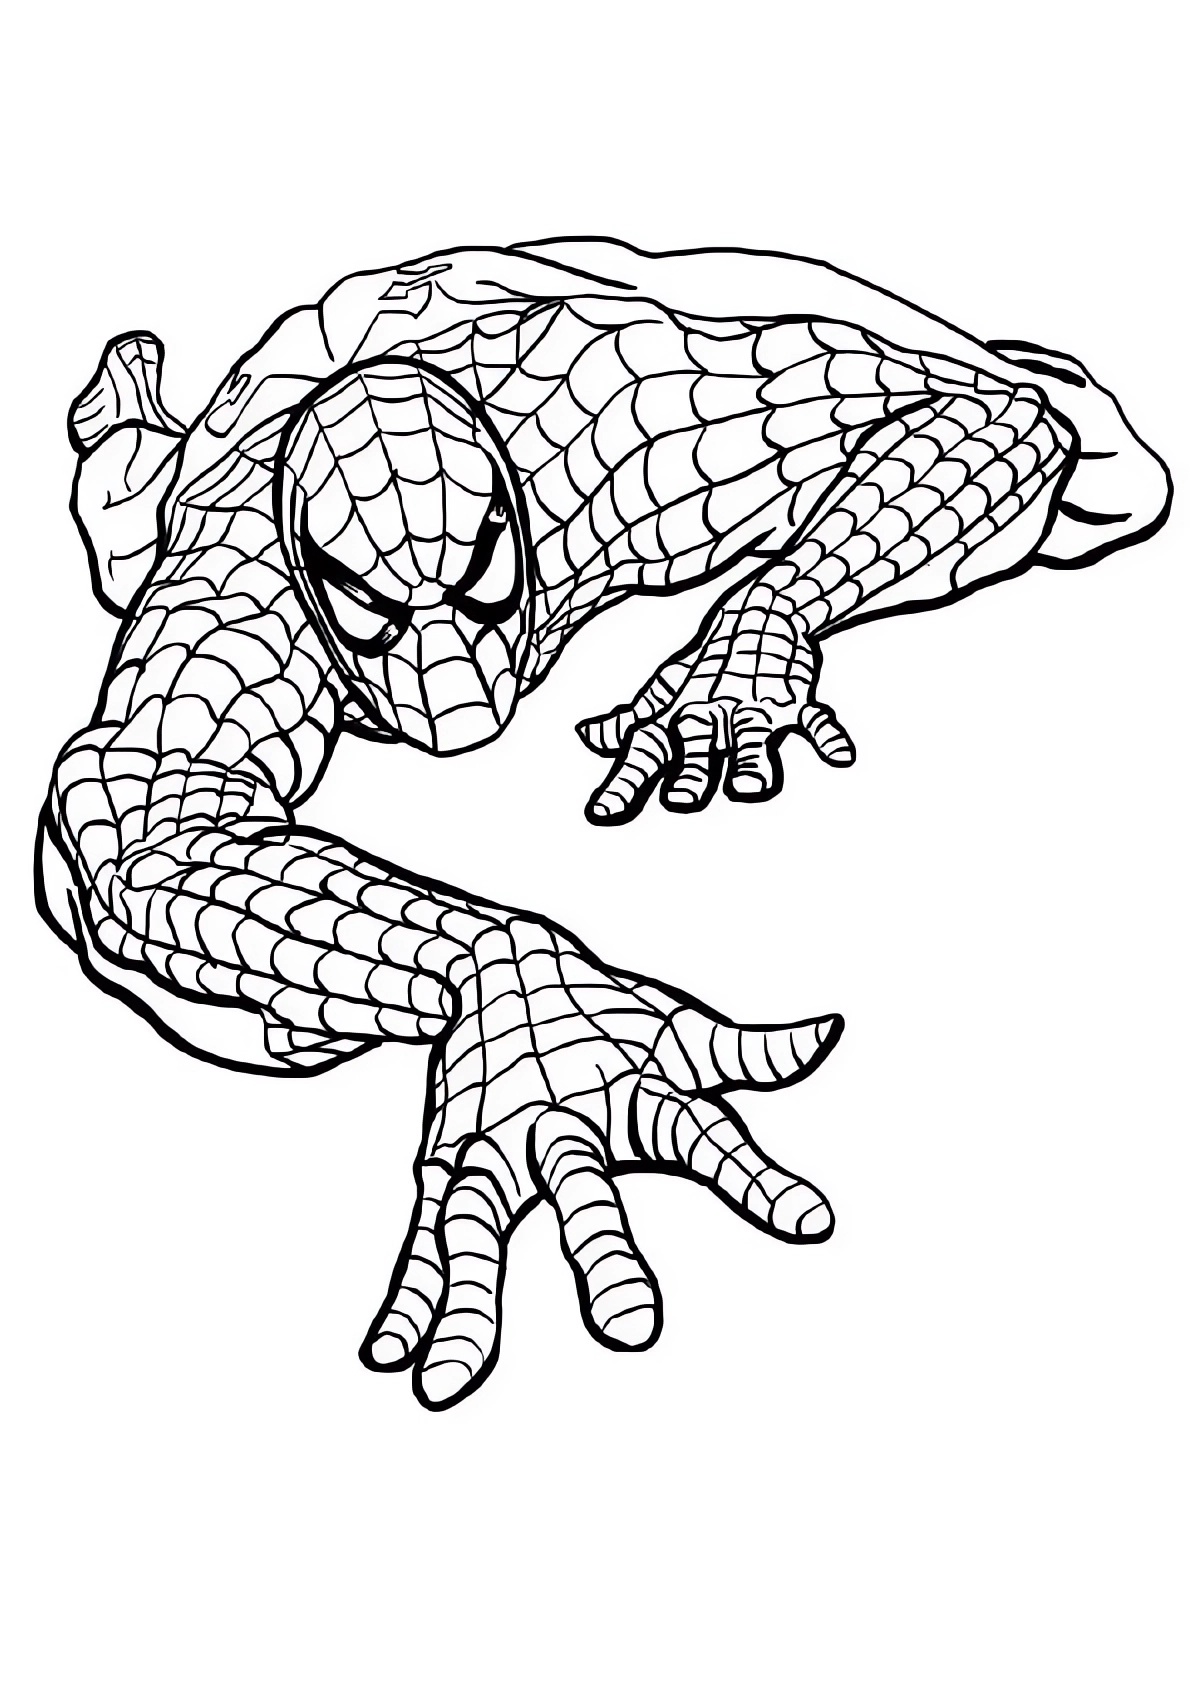 Spiderman-Seite zum Ausdrucken und Ausmalen